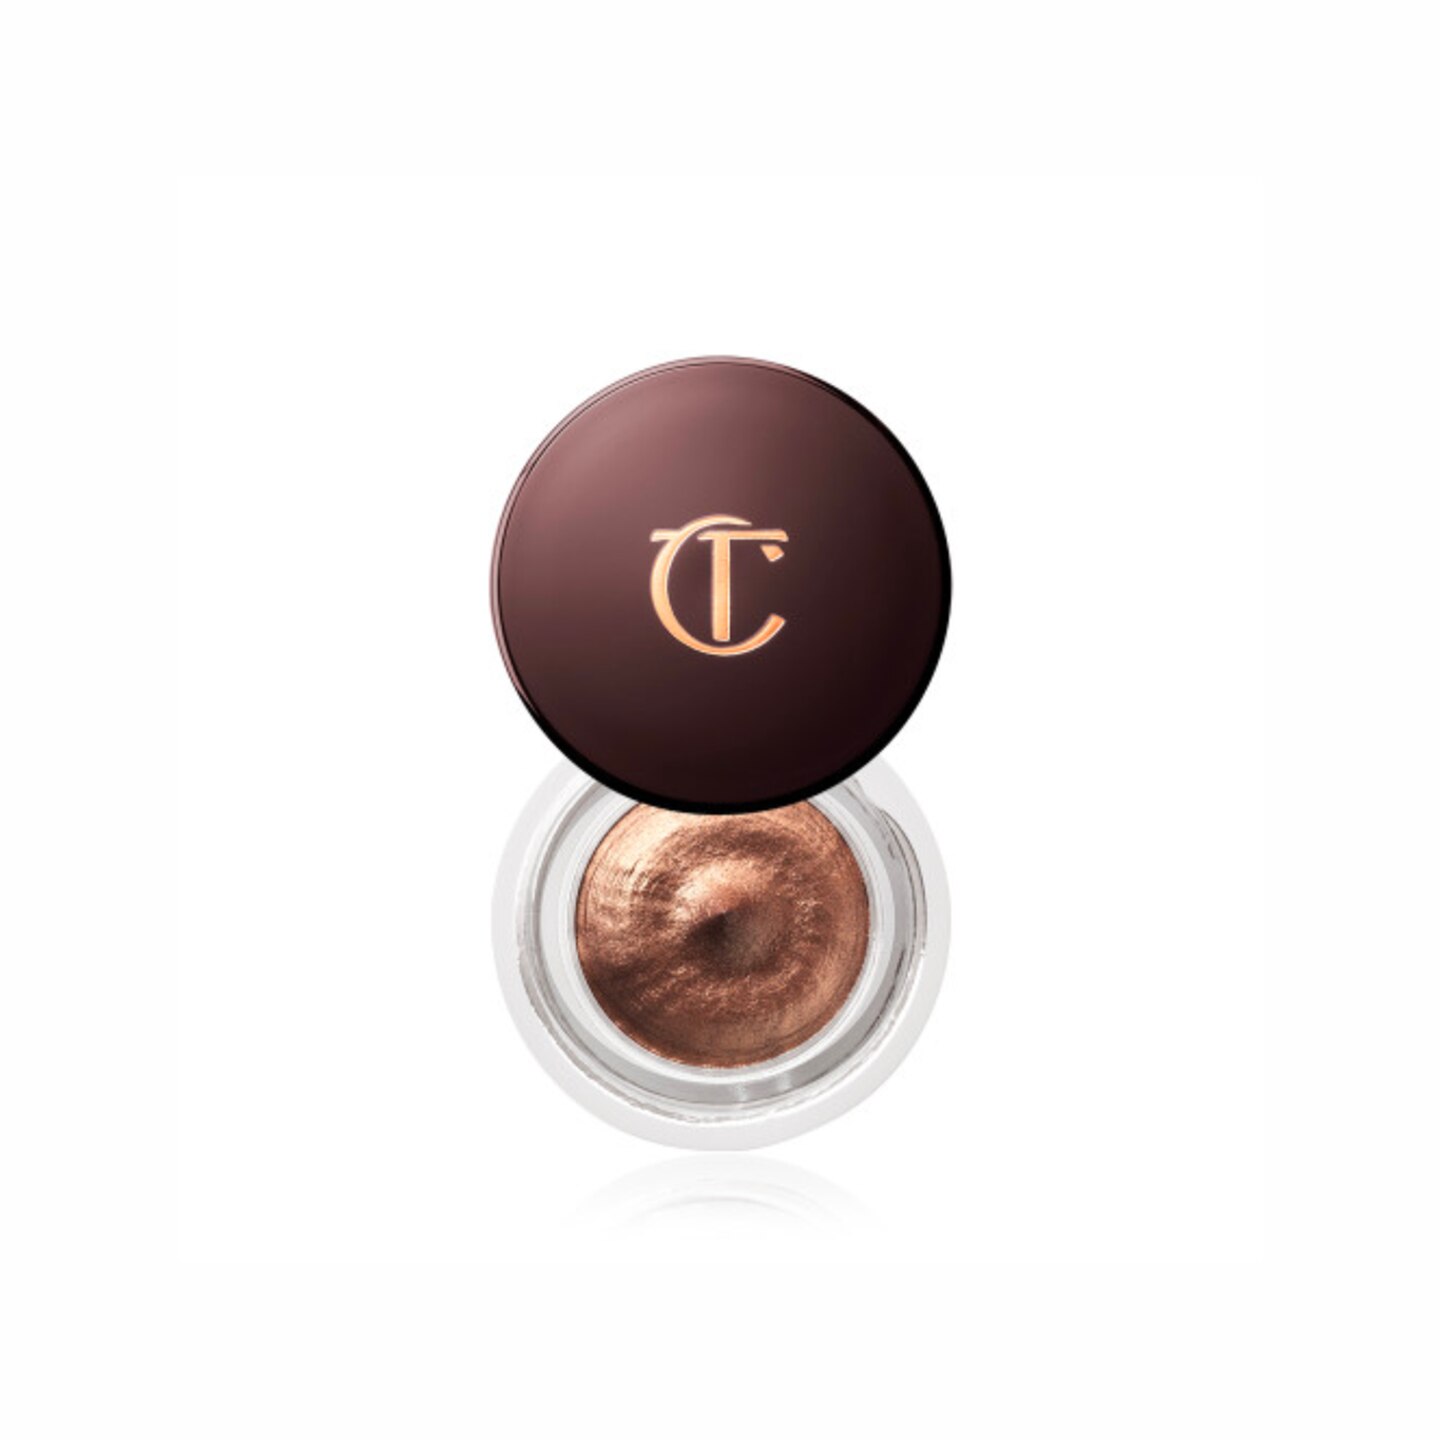 Einen Creme-Lidschatten wie den Eyes To Mesmerise von Charlotte Tilbury in der Farbe Chocolate Bronze können wir auch neben dem Espresso-Trinken auftragen, so einfach geht das. Ein Wisch und schon ist euer langanhaltendes Augen-Make-up perfekt. Um 32 Euro. 